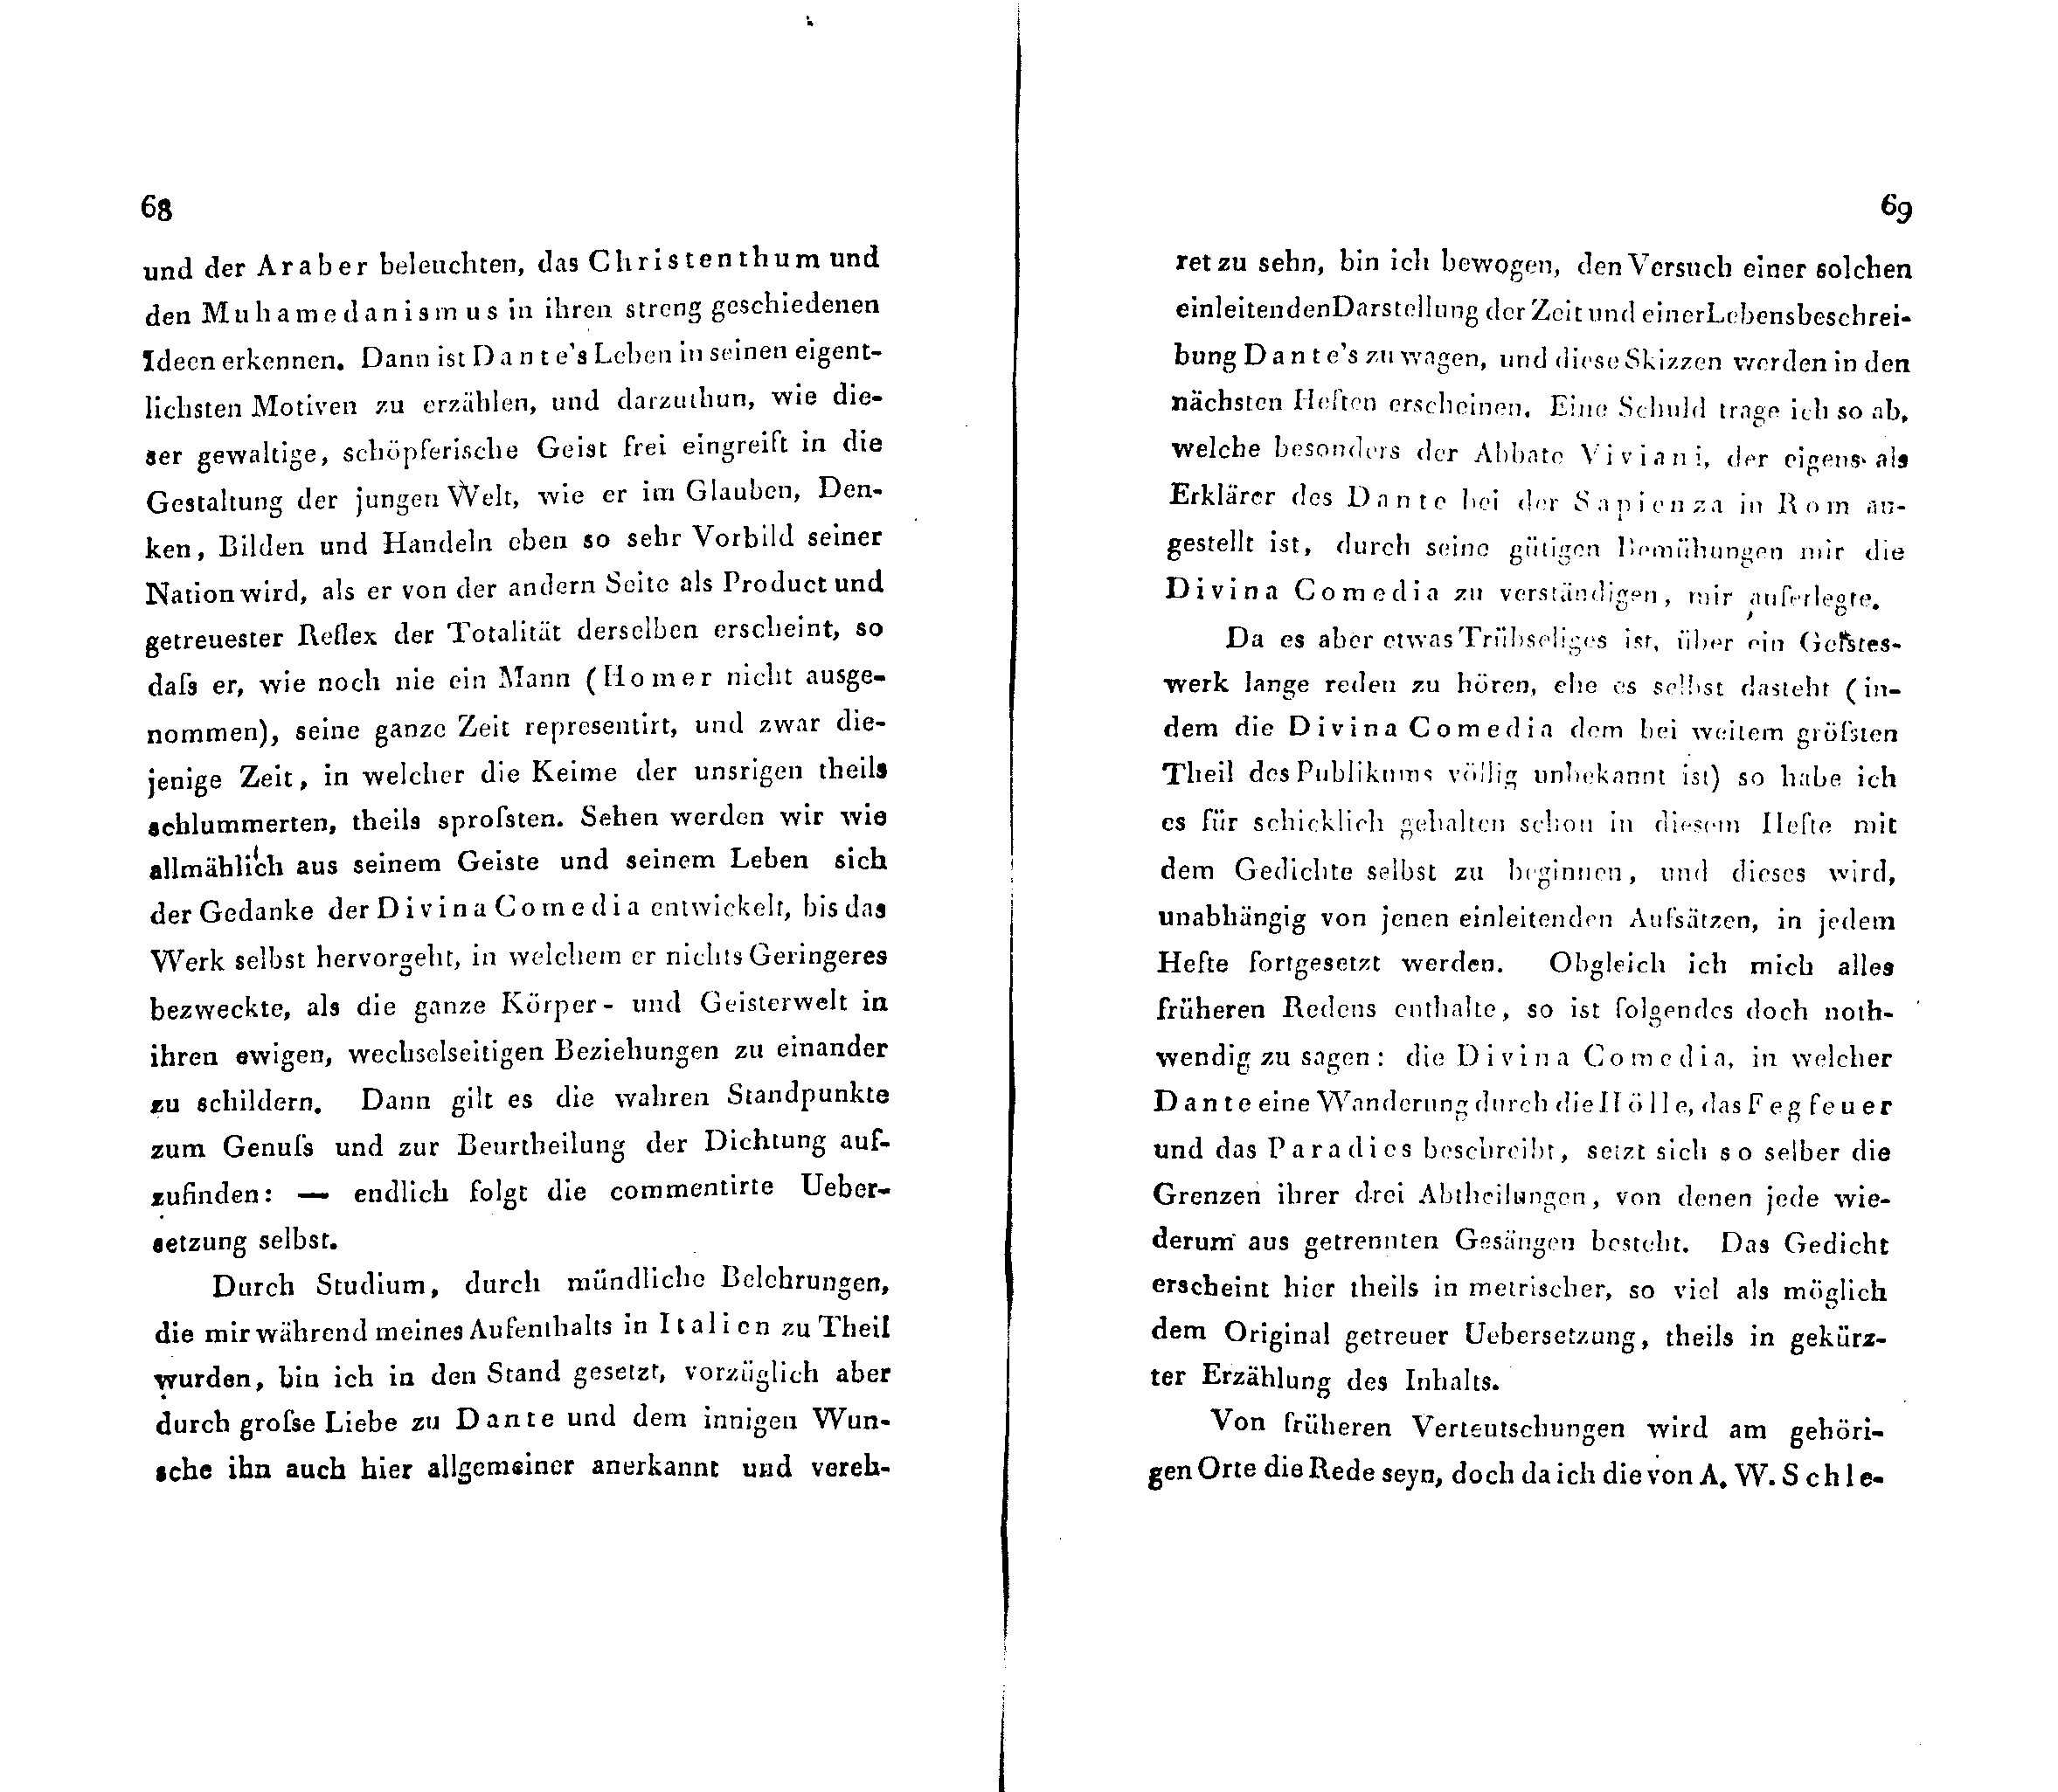 Ueber Dante Alighieri, seine Zeit und seine Divina Comedia [1] (1824) | 2. (68-69) Main body of text